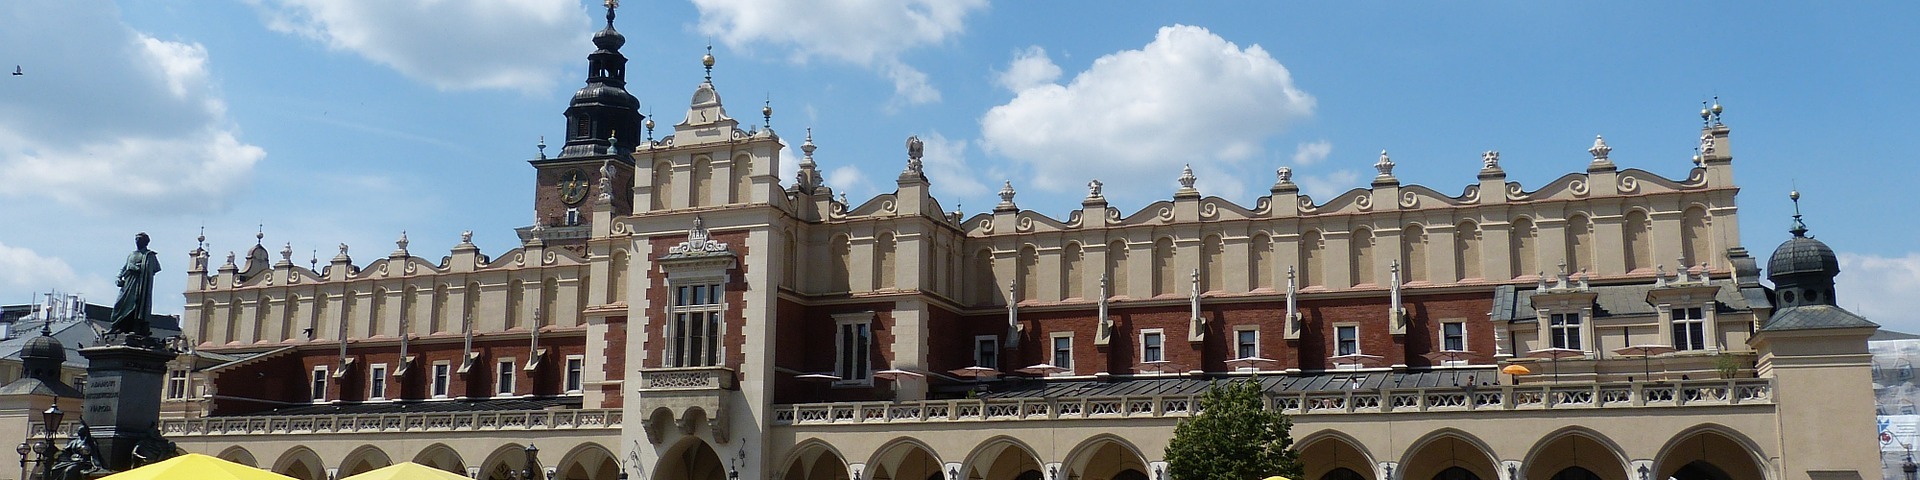 Cloth Hall In Krakow